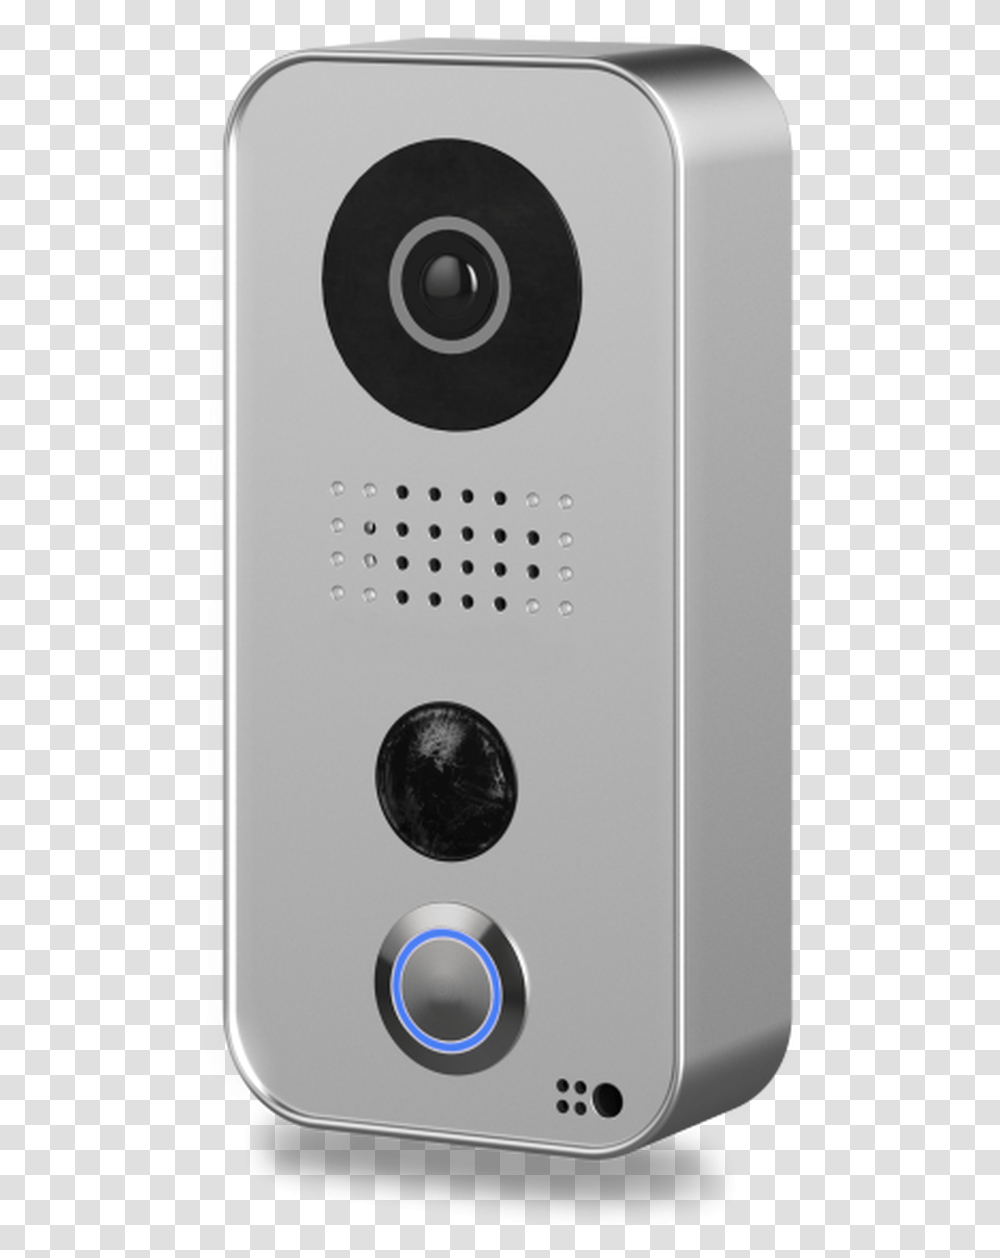 Doorbird Wifi Video Door Intercom System D101s Silver Doorbird, Mobile Phone, Electronics, Cell Phone, Appliance Transparent Png